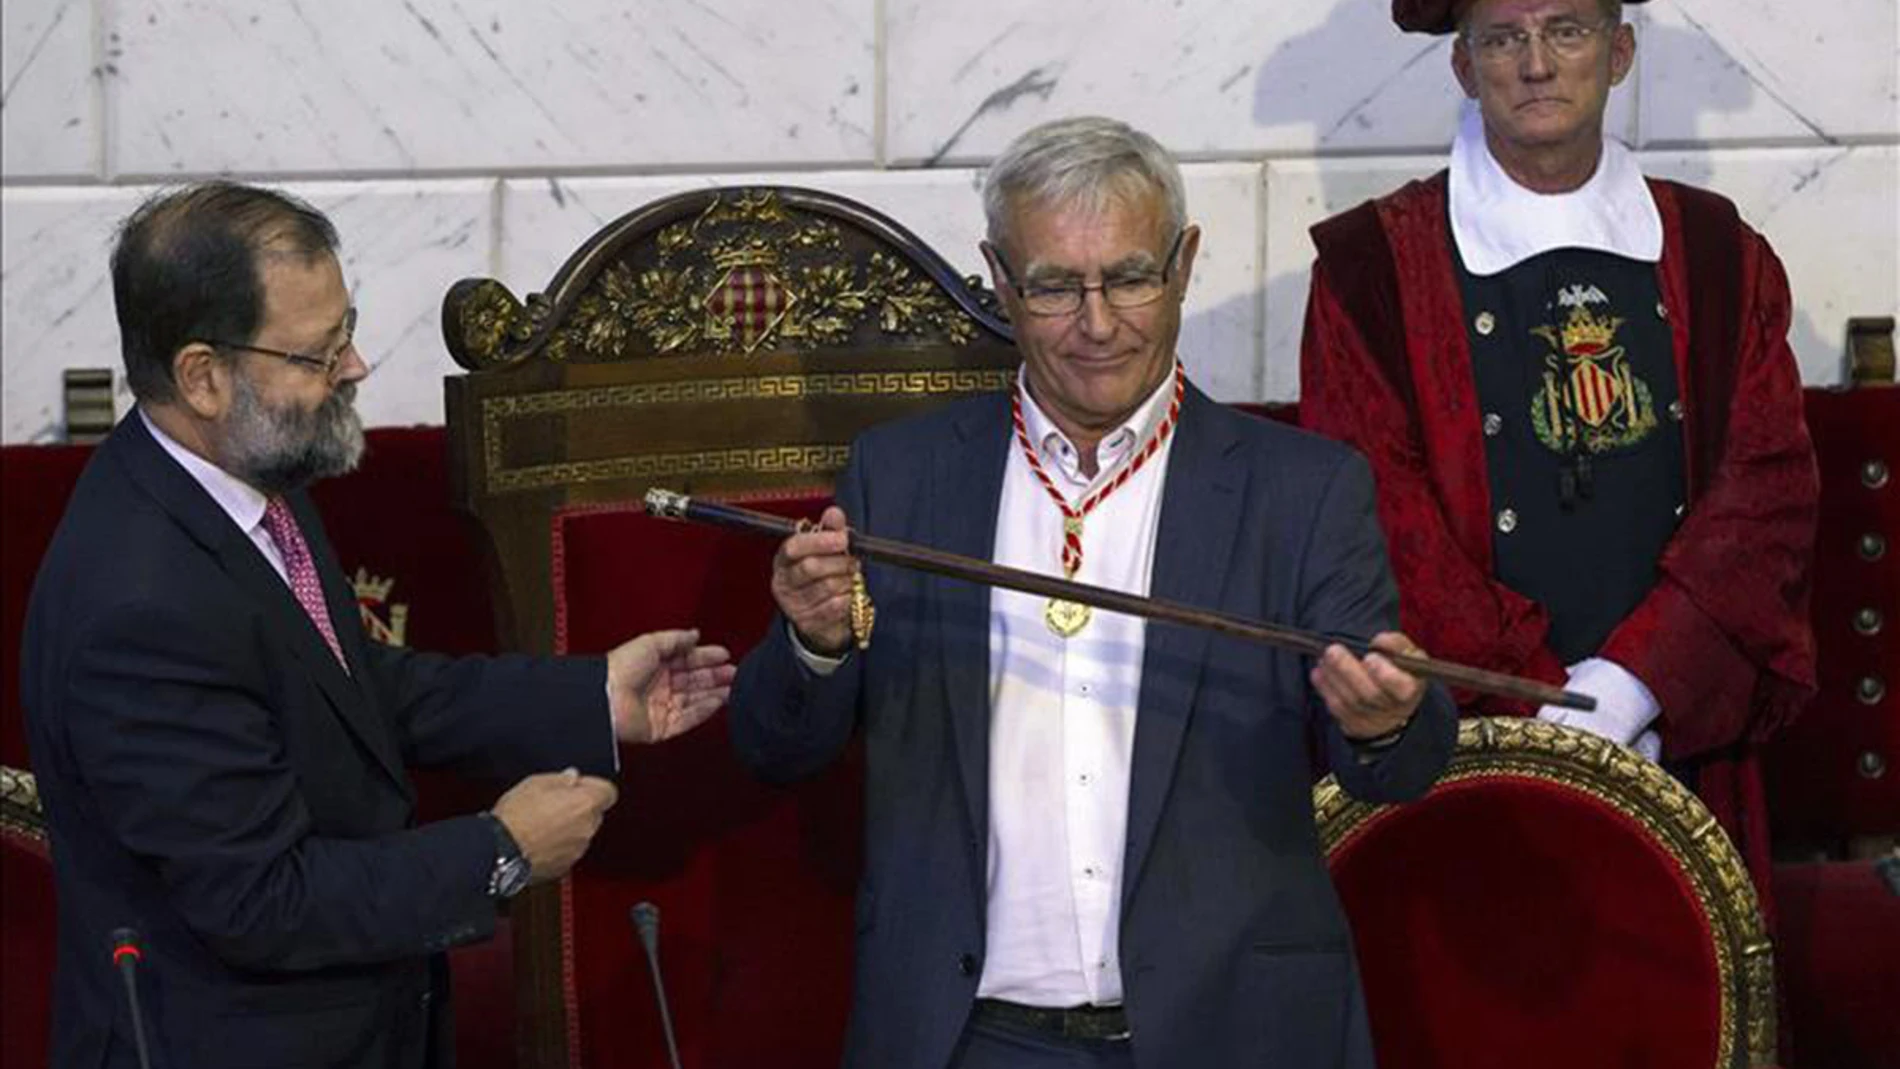 Joan Ribó de Compromís, nuevo alcalde de Valencia